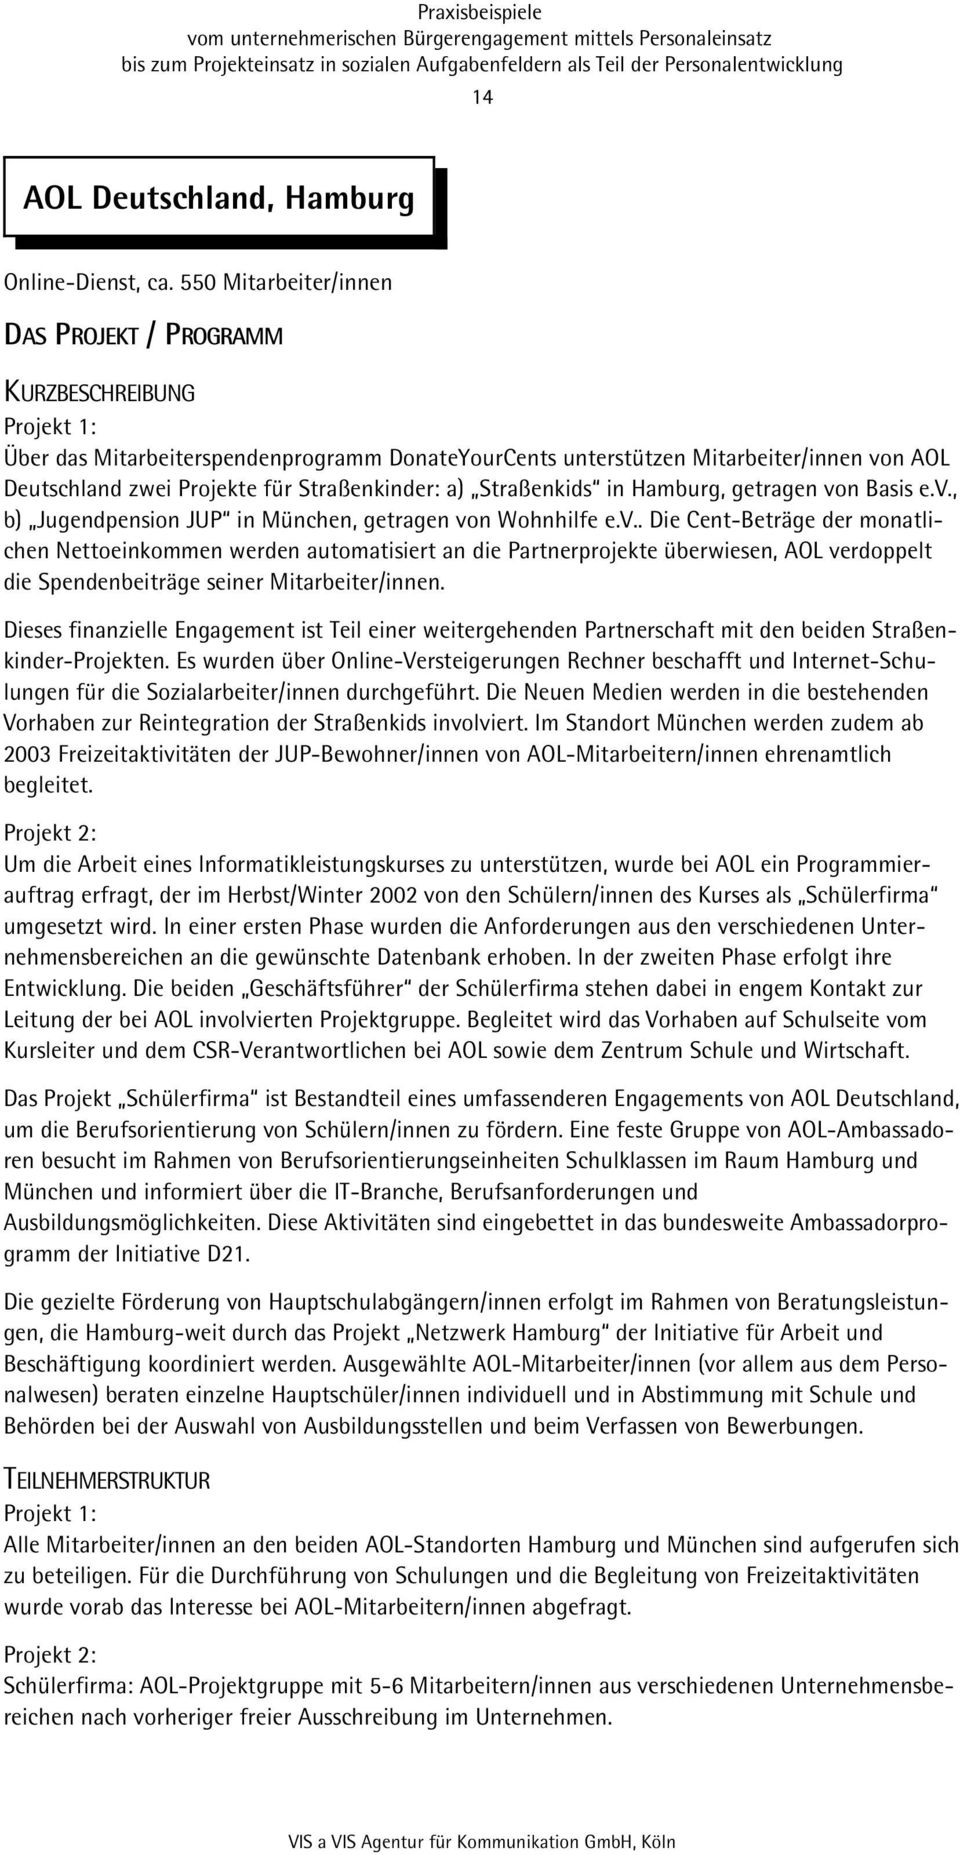 Straßenkids in Hamburg, getragen von Basis e.v., b) Jugendpension JUP in München, getragen von Wohnhilfe e.v.. Die Cent-Beträge der monatlichen Nettoeinkommen werden automatisiert an die Partnerprojekte überwiesen, AOL verdoppelt die Spendenbeiträge seiner Mitarbeiter/innen.